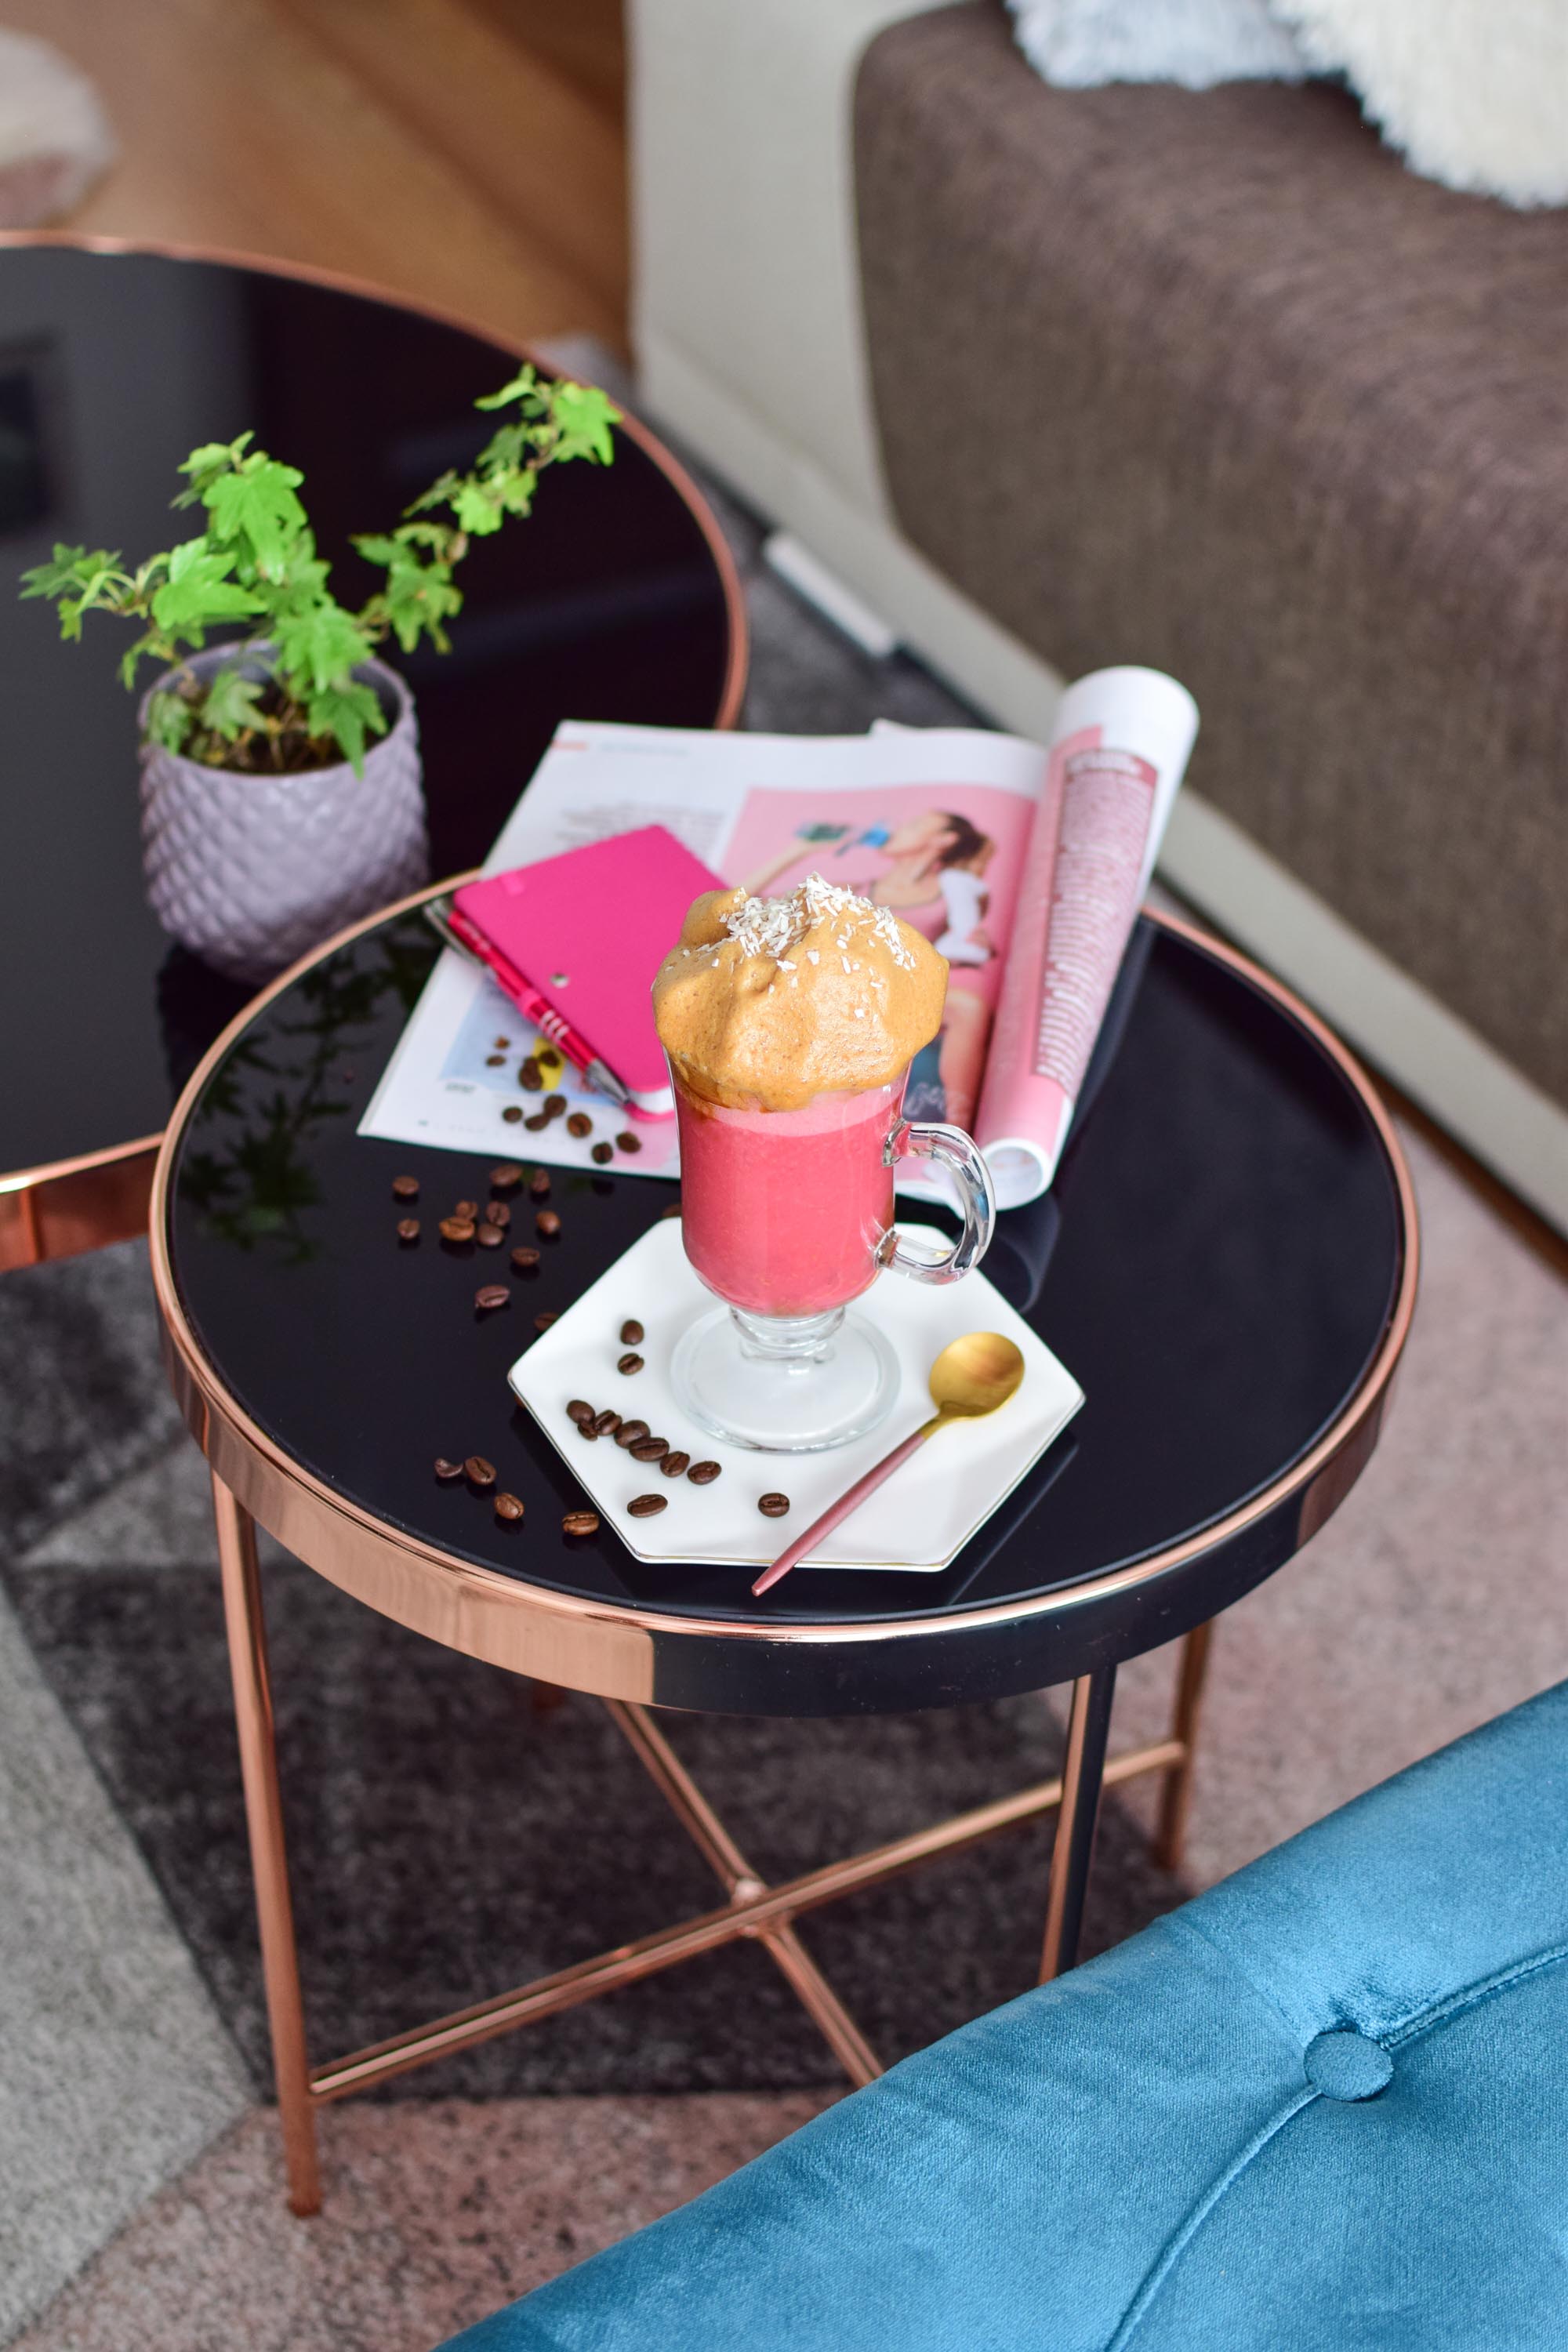 Kokosowo-malinowa dalgona coffee | Mój przepis na słynny napój z Instagramu | Meg Style - kobiecy blog o urodzie, modzie, stylu życia i samorozwoju